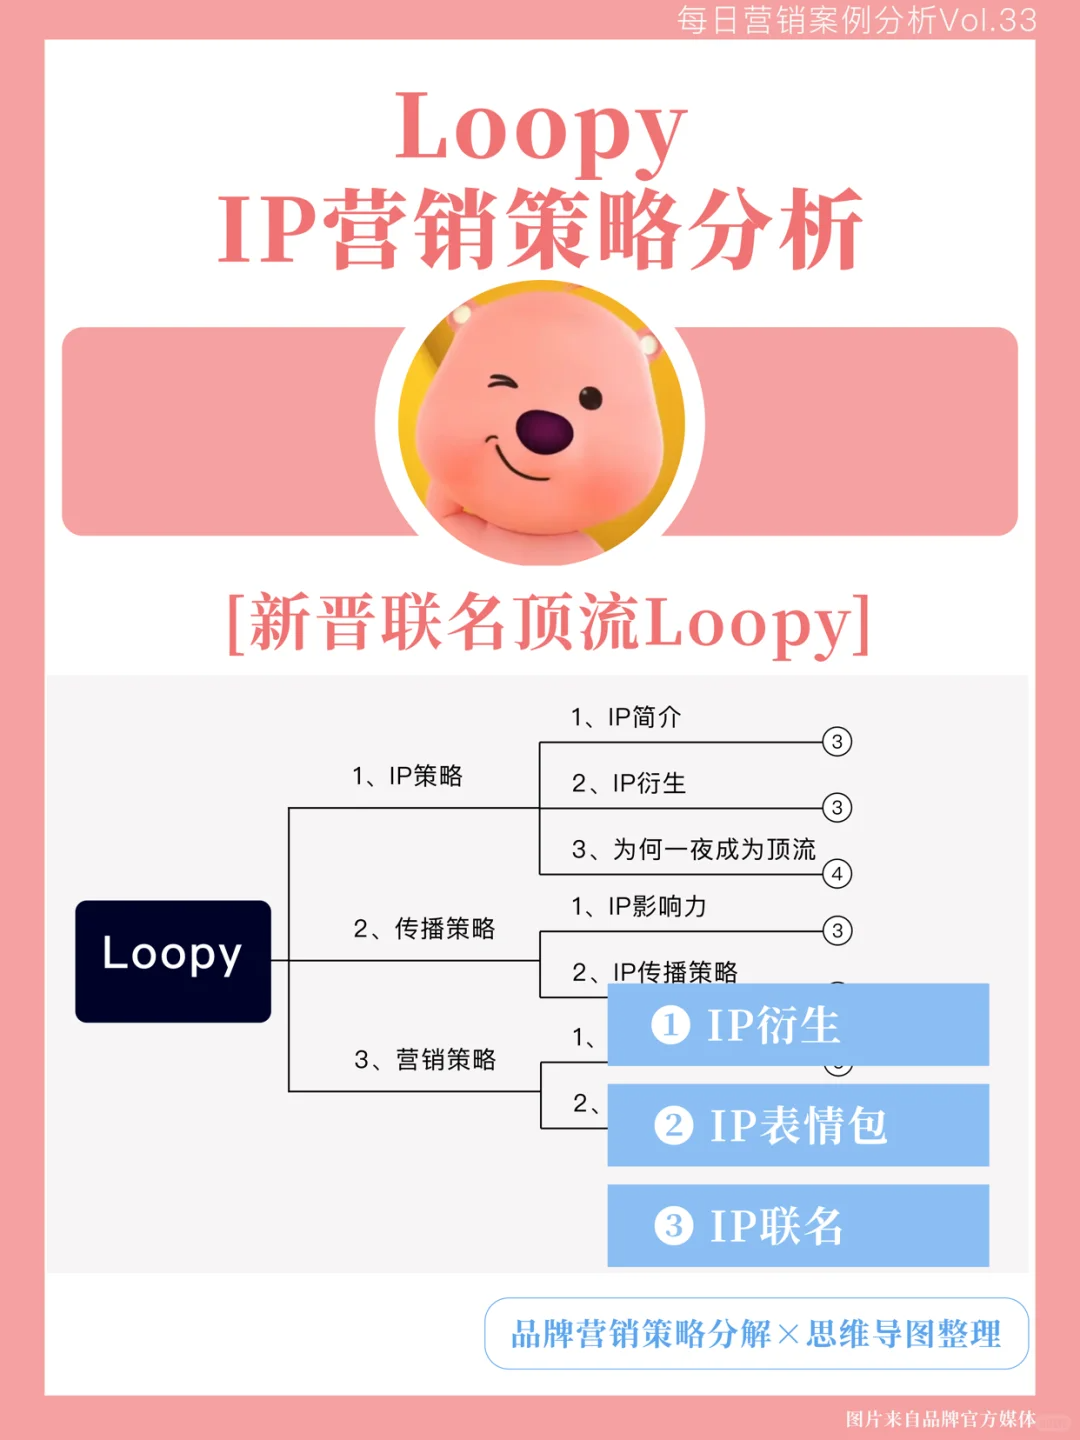 Loopy的IP营销策略分析